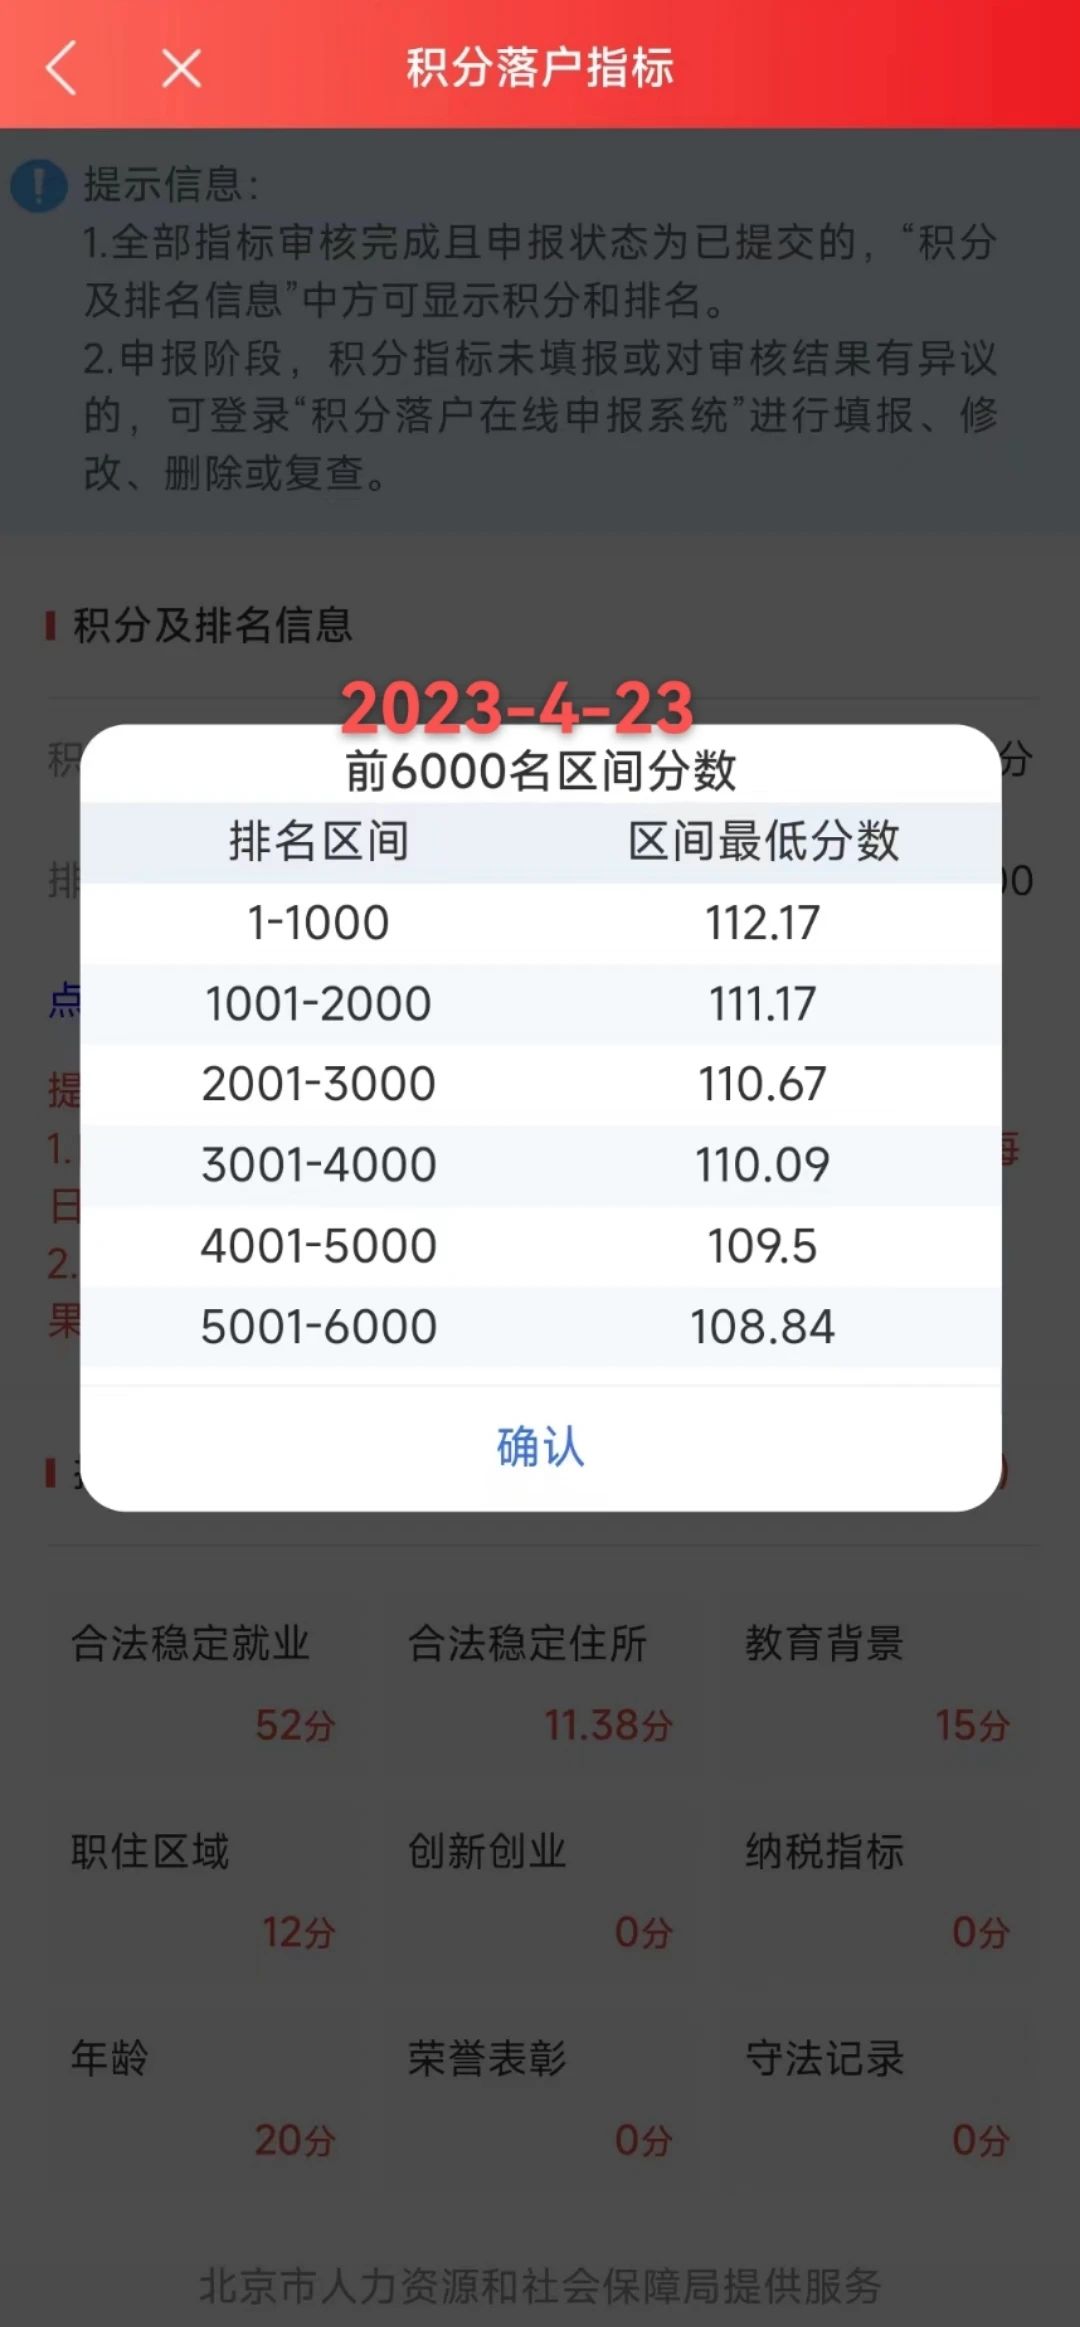 2023年北京积分落户前6000名区间分数